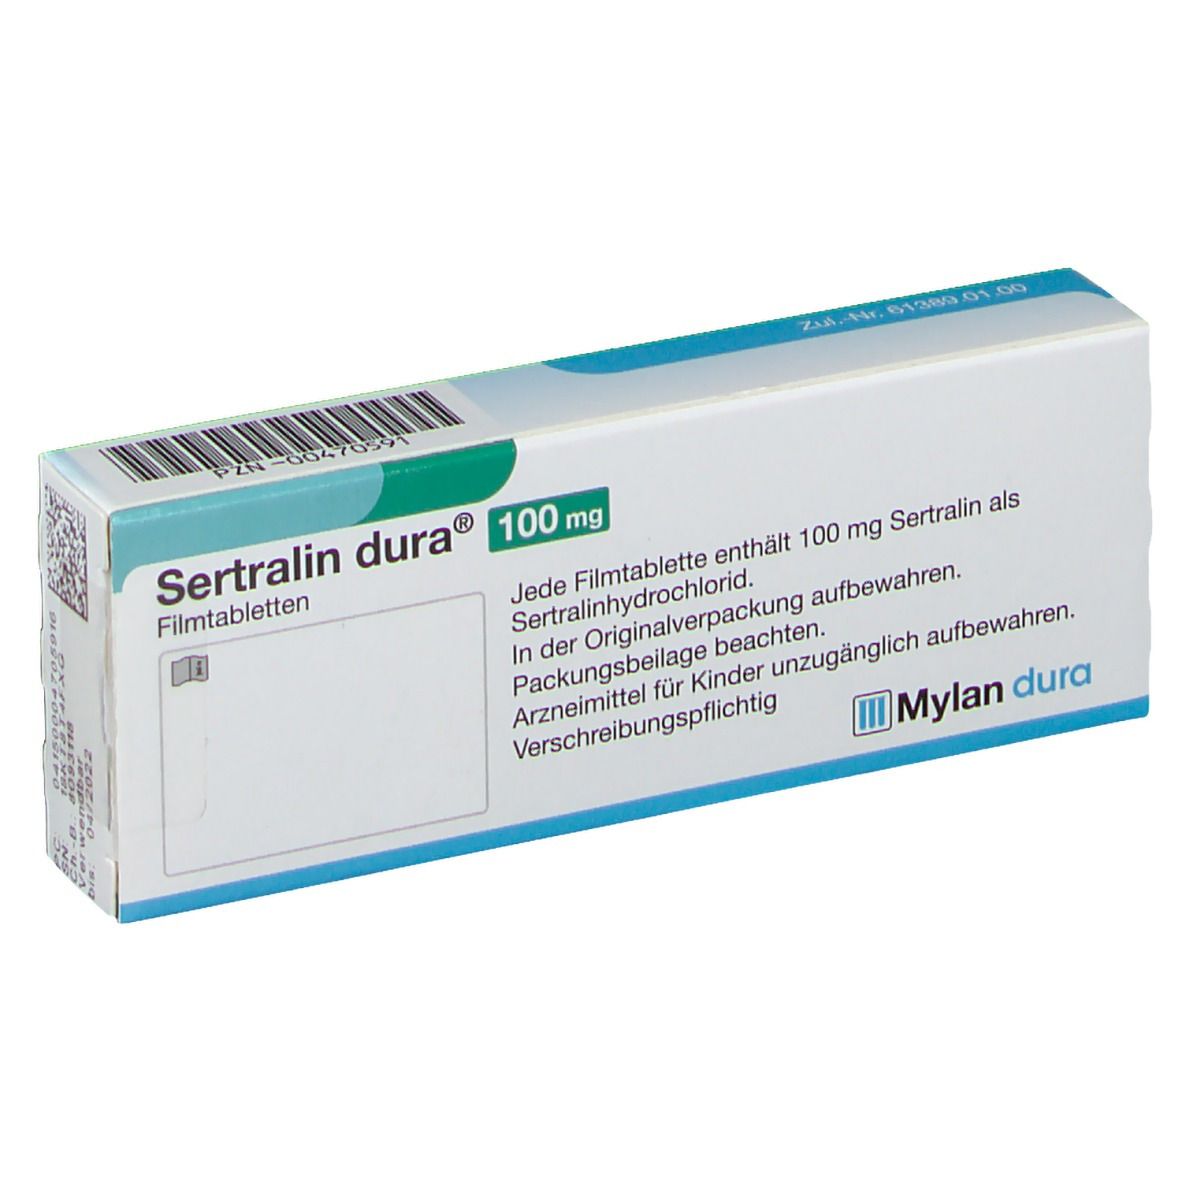 Sertralin dura® 100 mg